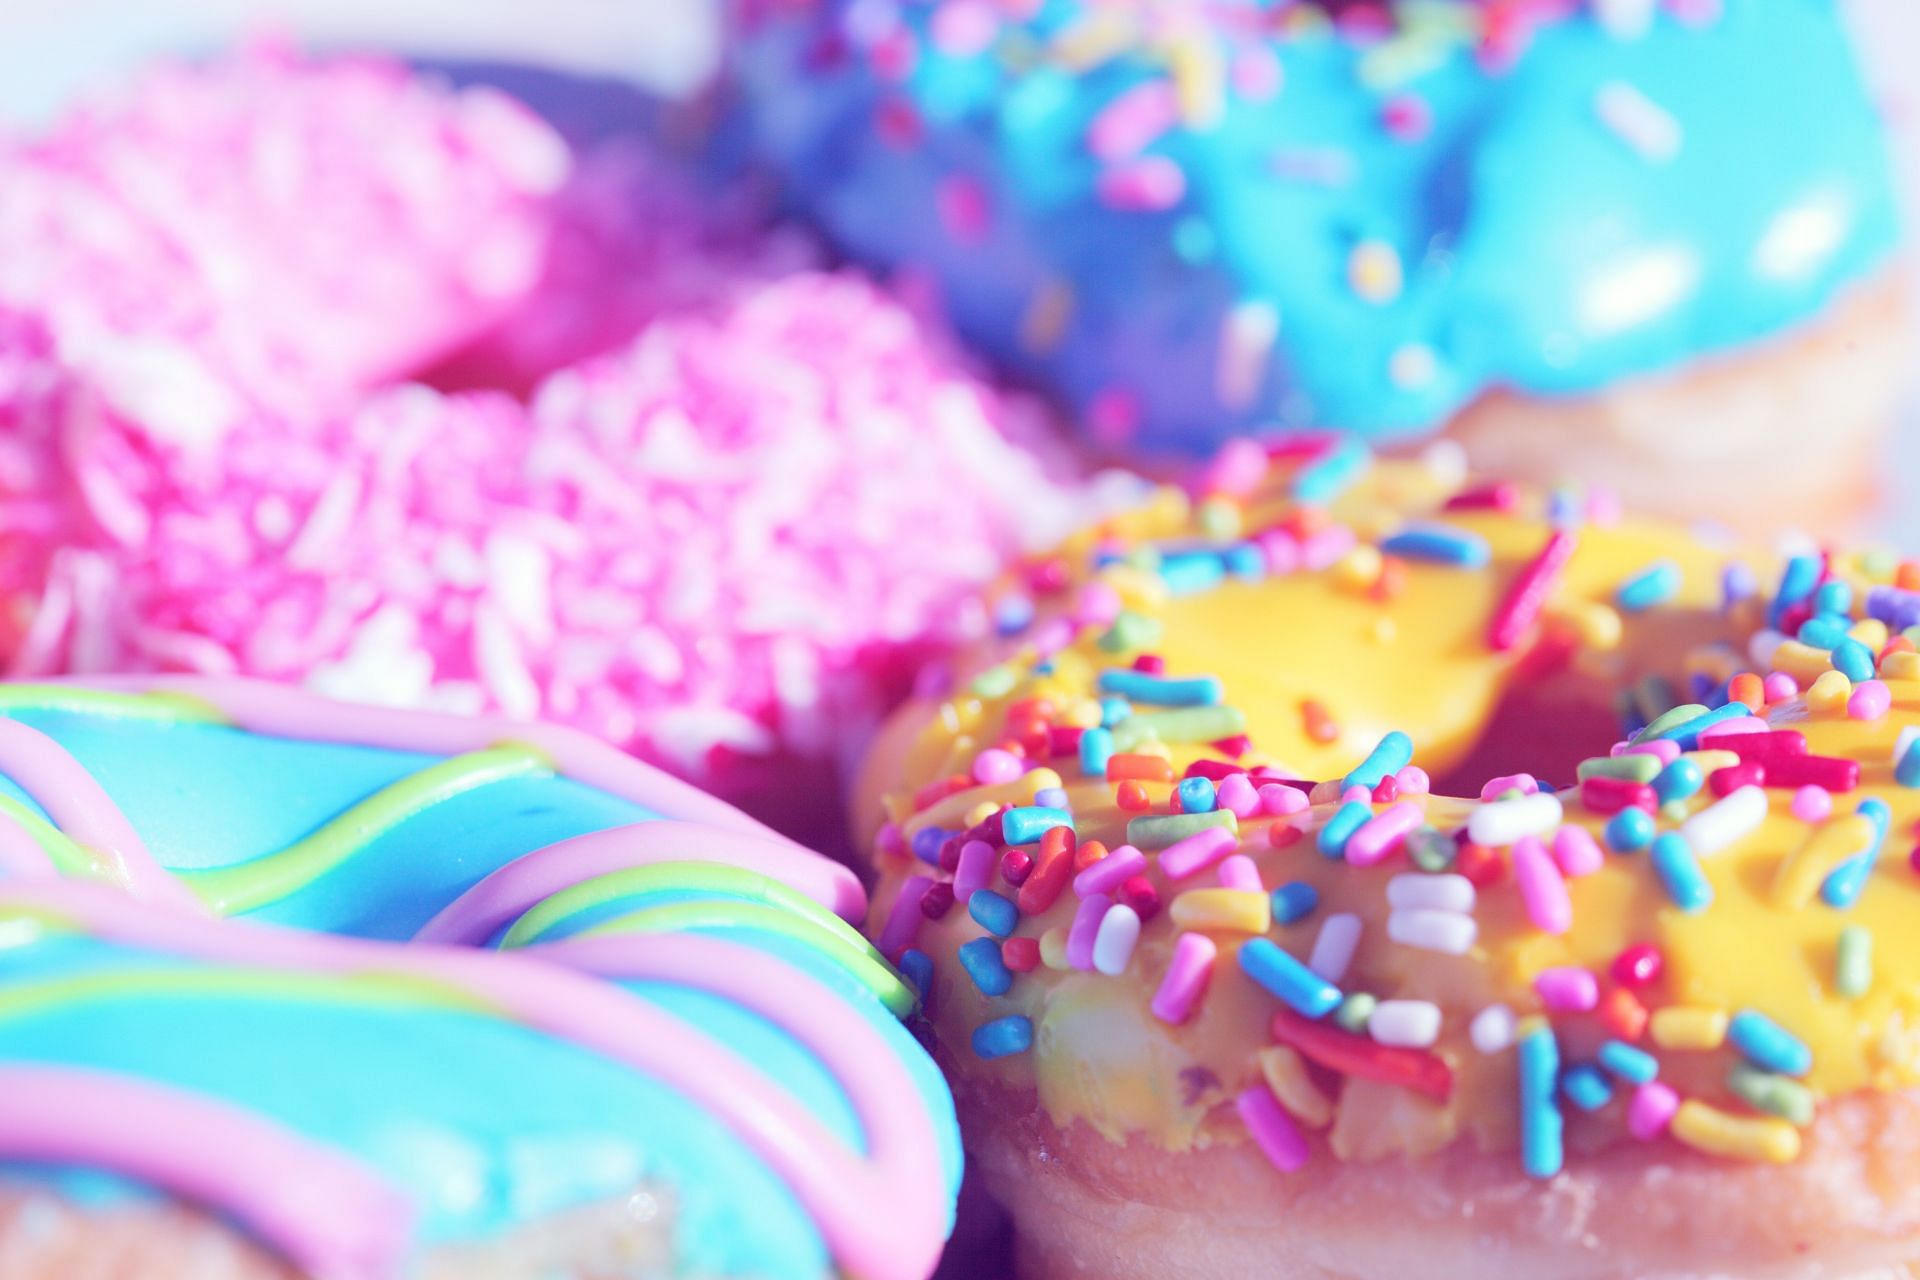 Sugary foods are in general very inflammatory (Image via Pexels/Alexander Grey)